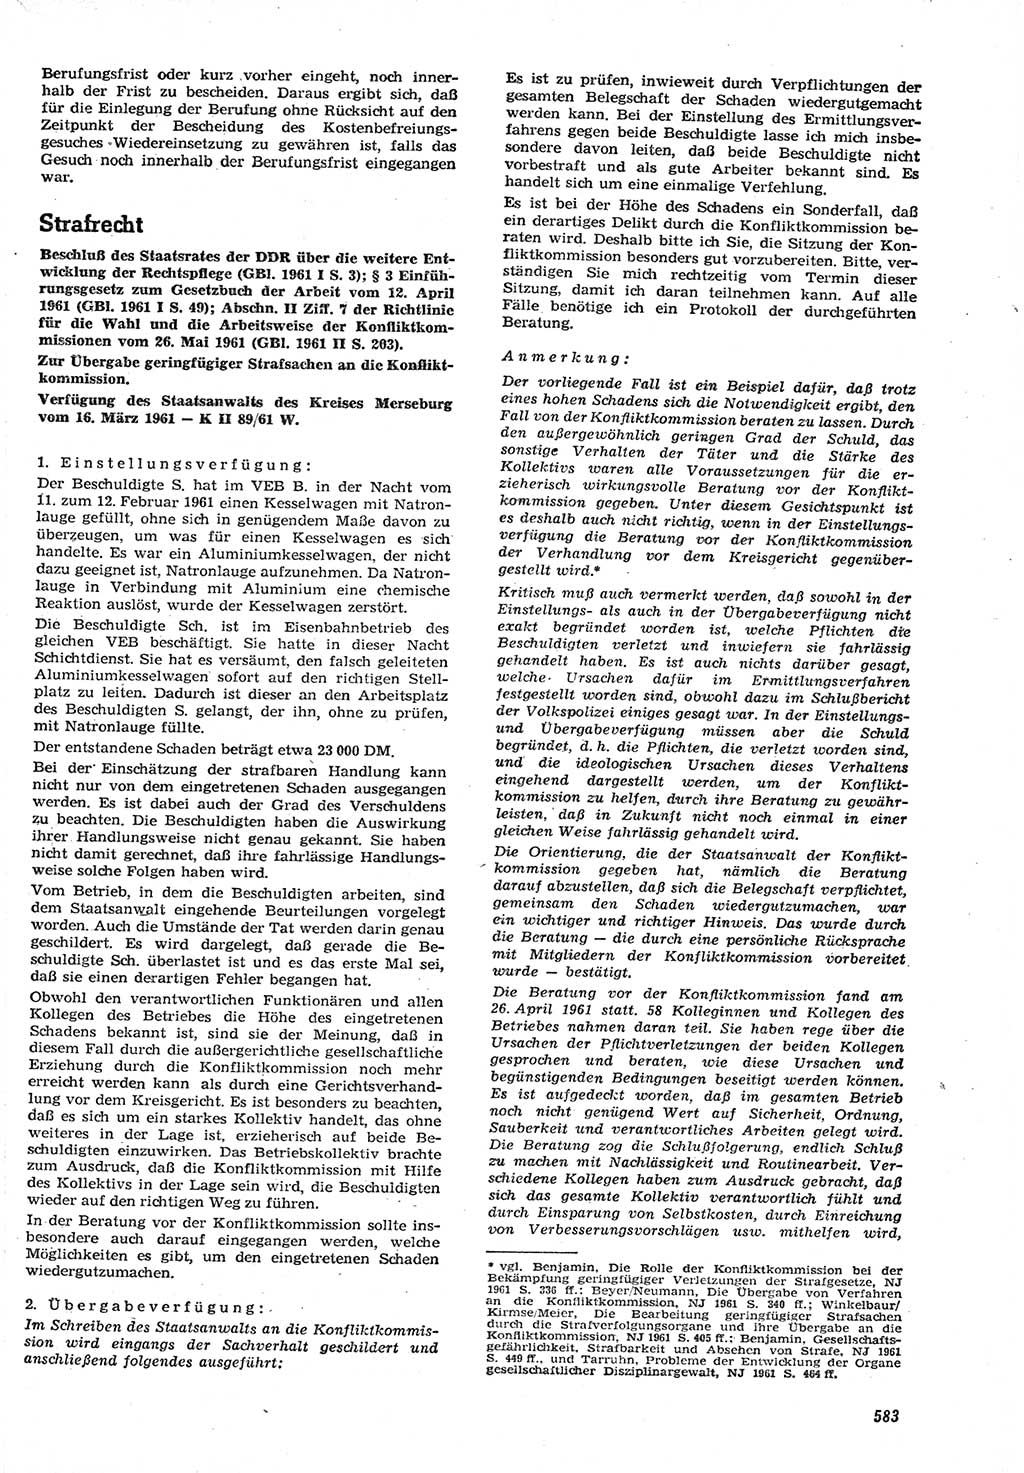 Neue Justiz (NJ), Zeitschrift für Recht und Rechtswissenschaft [Deutsche Demokratische Republik (DDR)], 15. Jahrgang 1961, Seite 583 (NJ DDR 1961, S. 583)